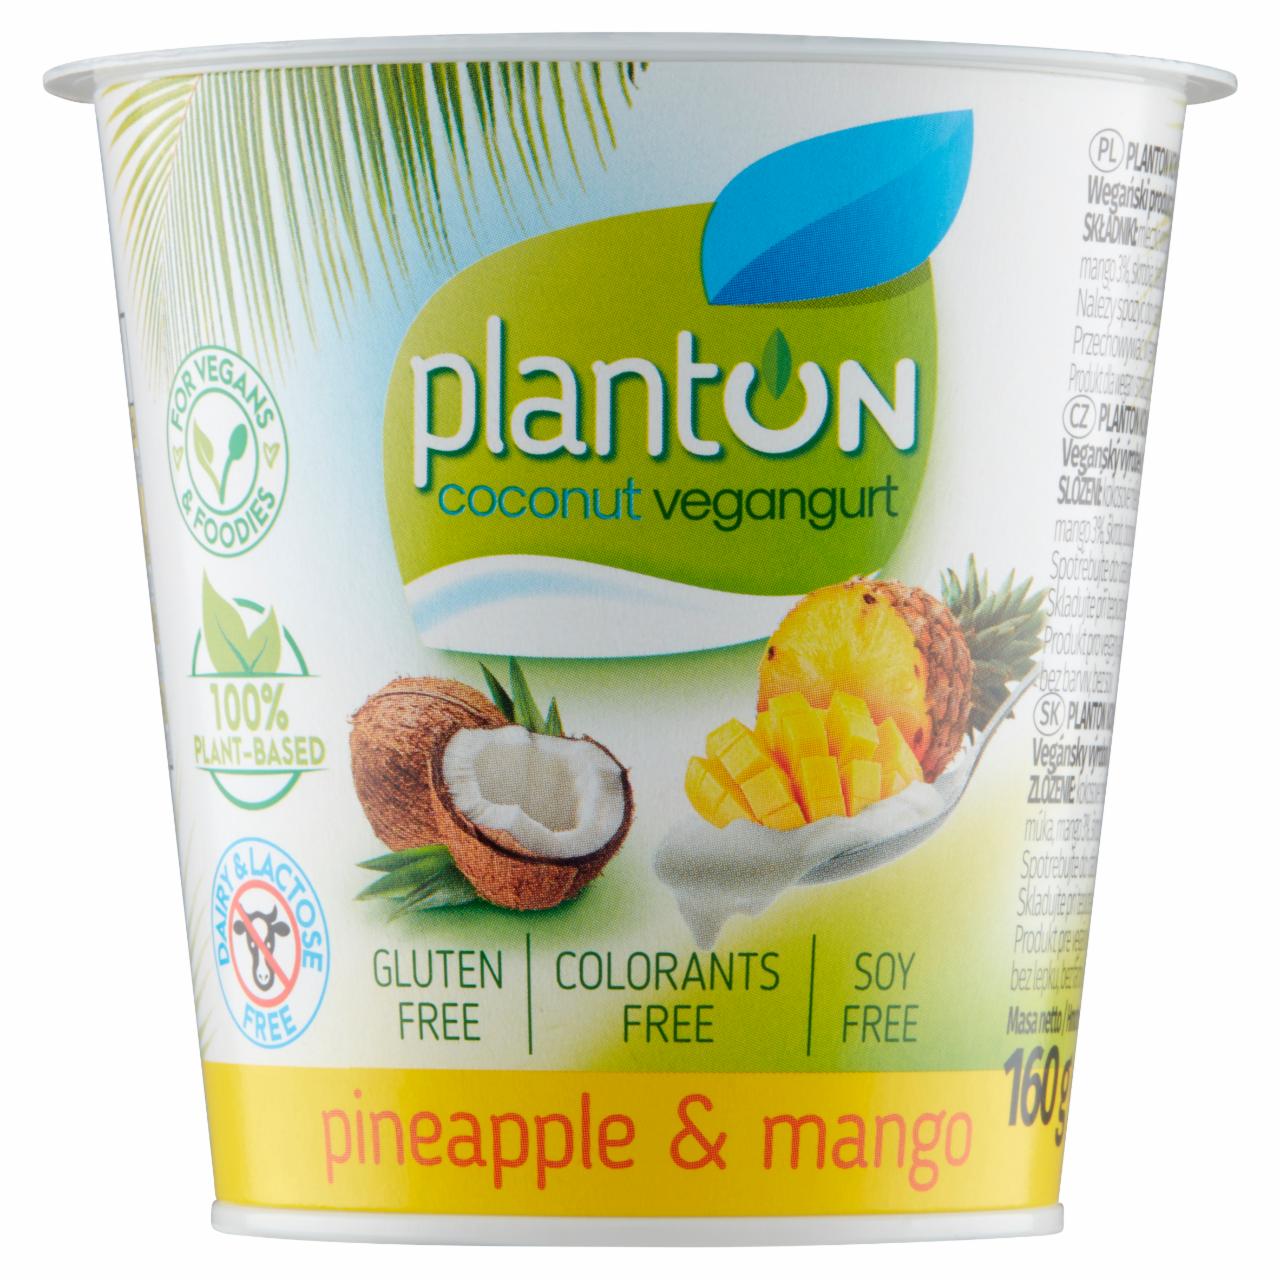 Zdjęcia - Planton Kokosowy vegangurt ananas & mango 160 g